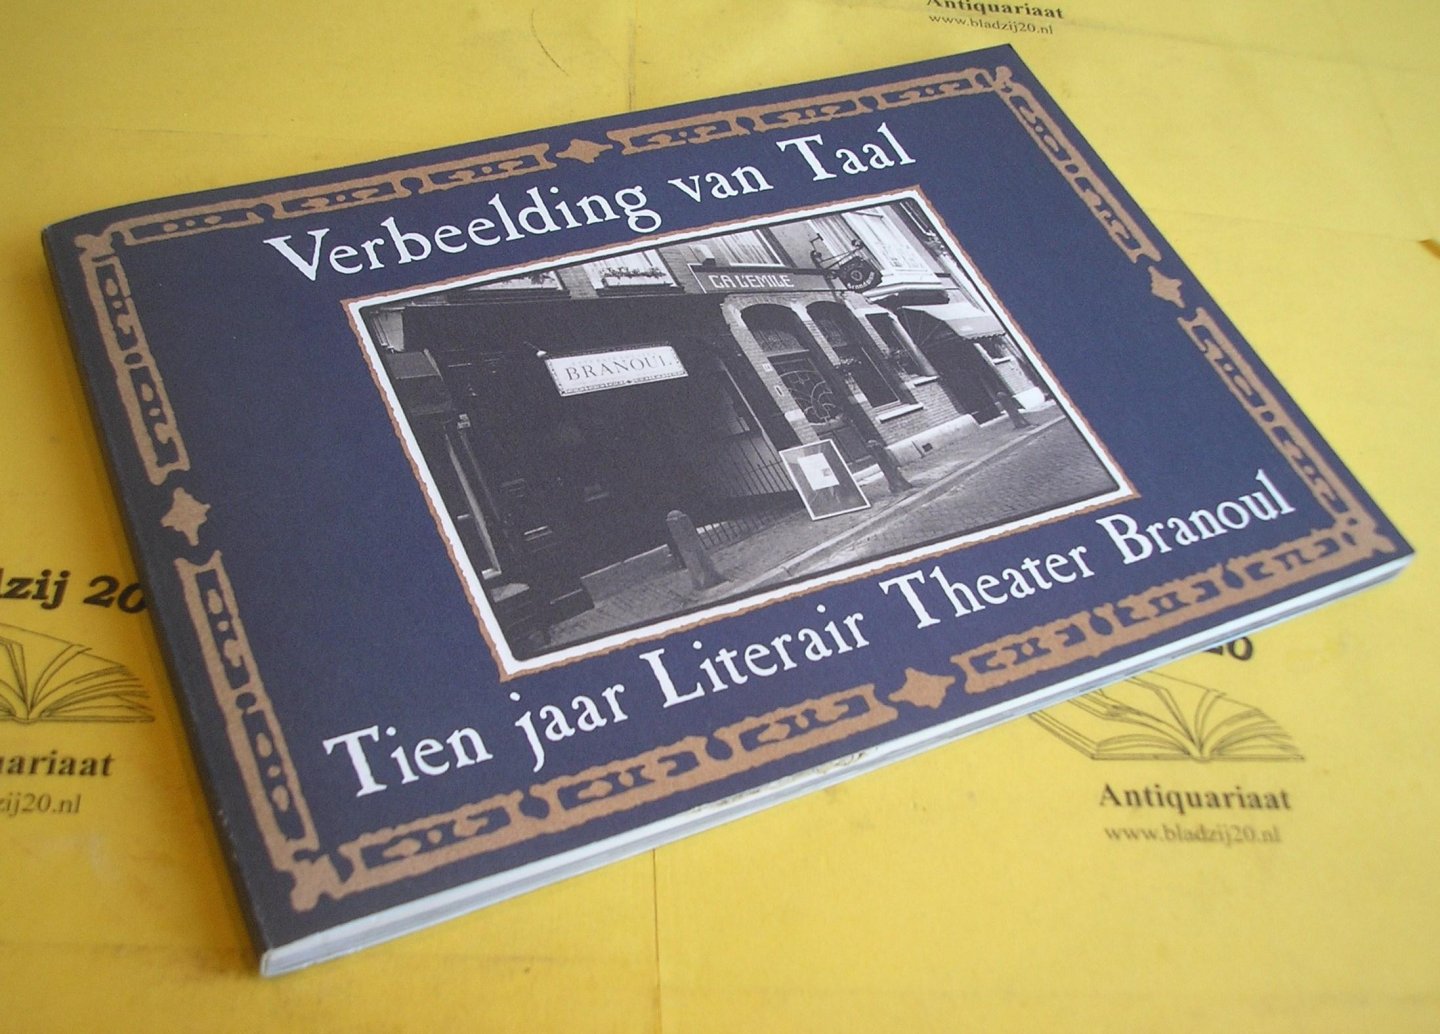 Heiden, Helmine, van der e.a. (red.). - Verbeelding van Taal. Tien jaar Literair Theater Branoul.